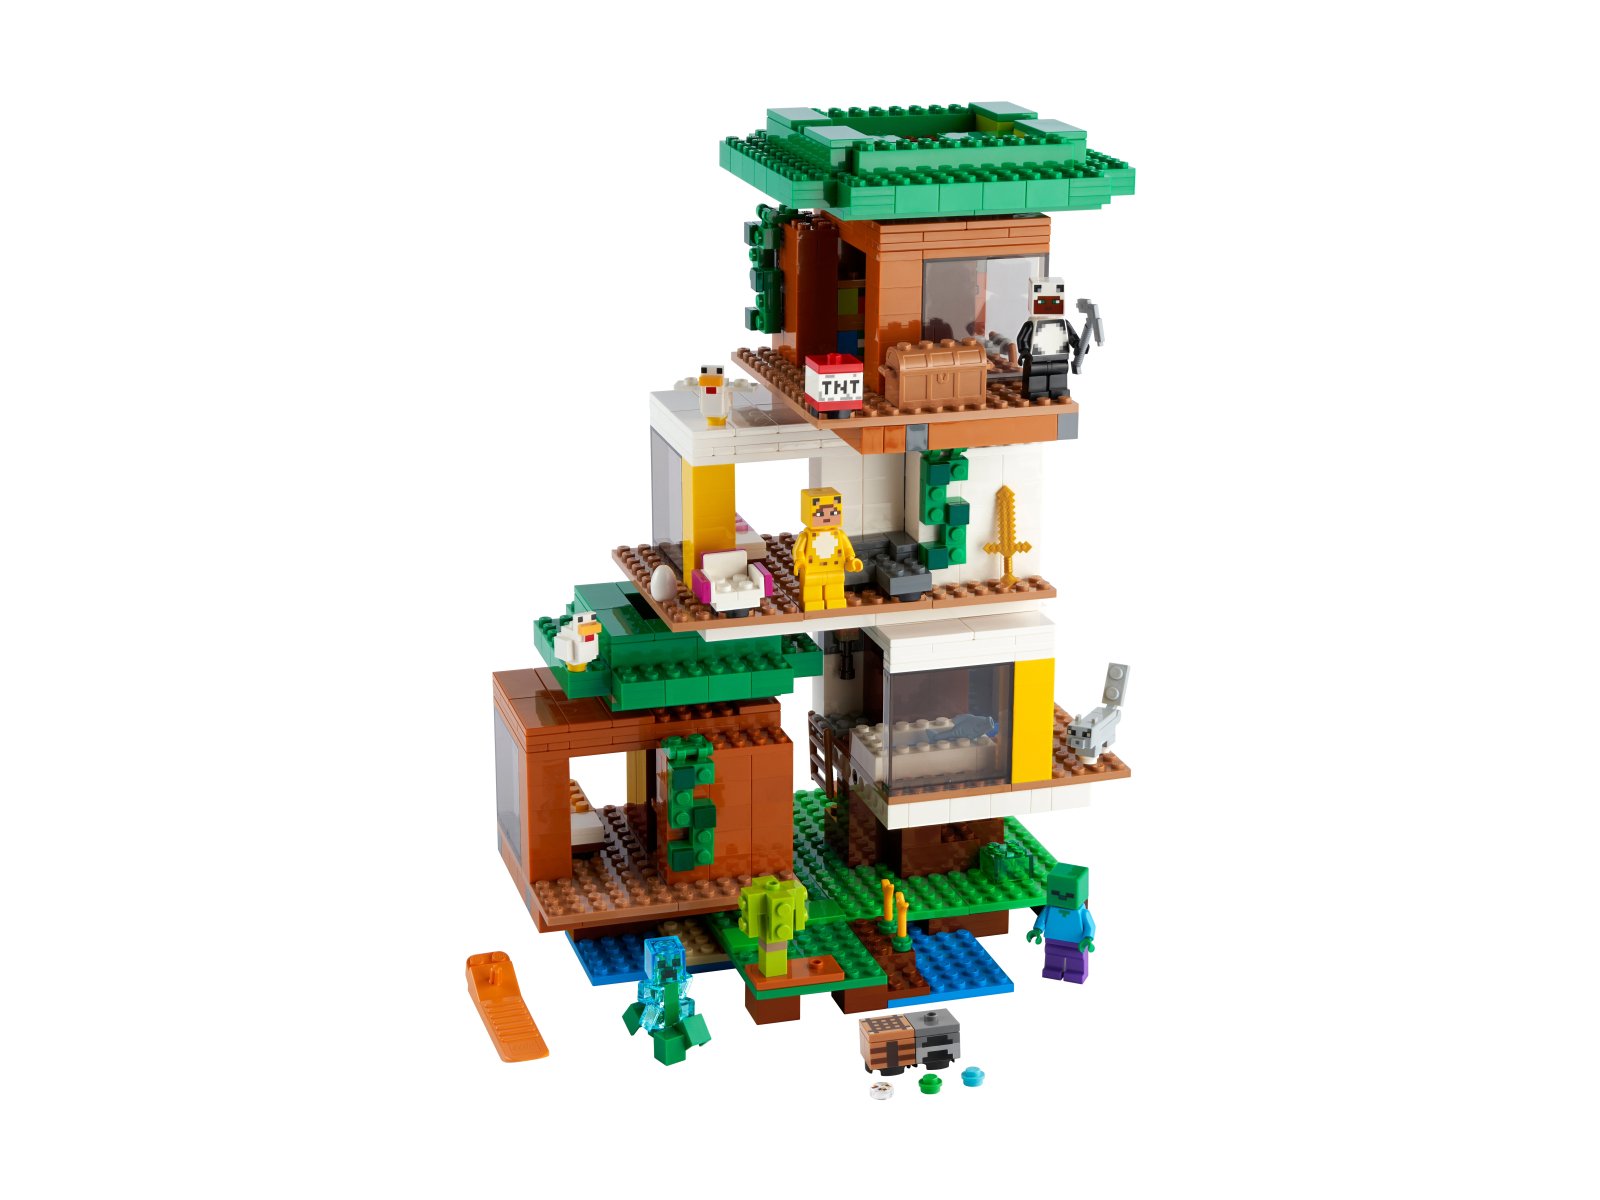 LEGO 21174 Nowoczesny domek na drzewie